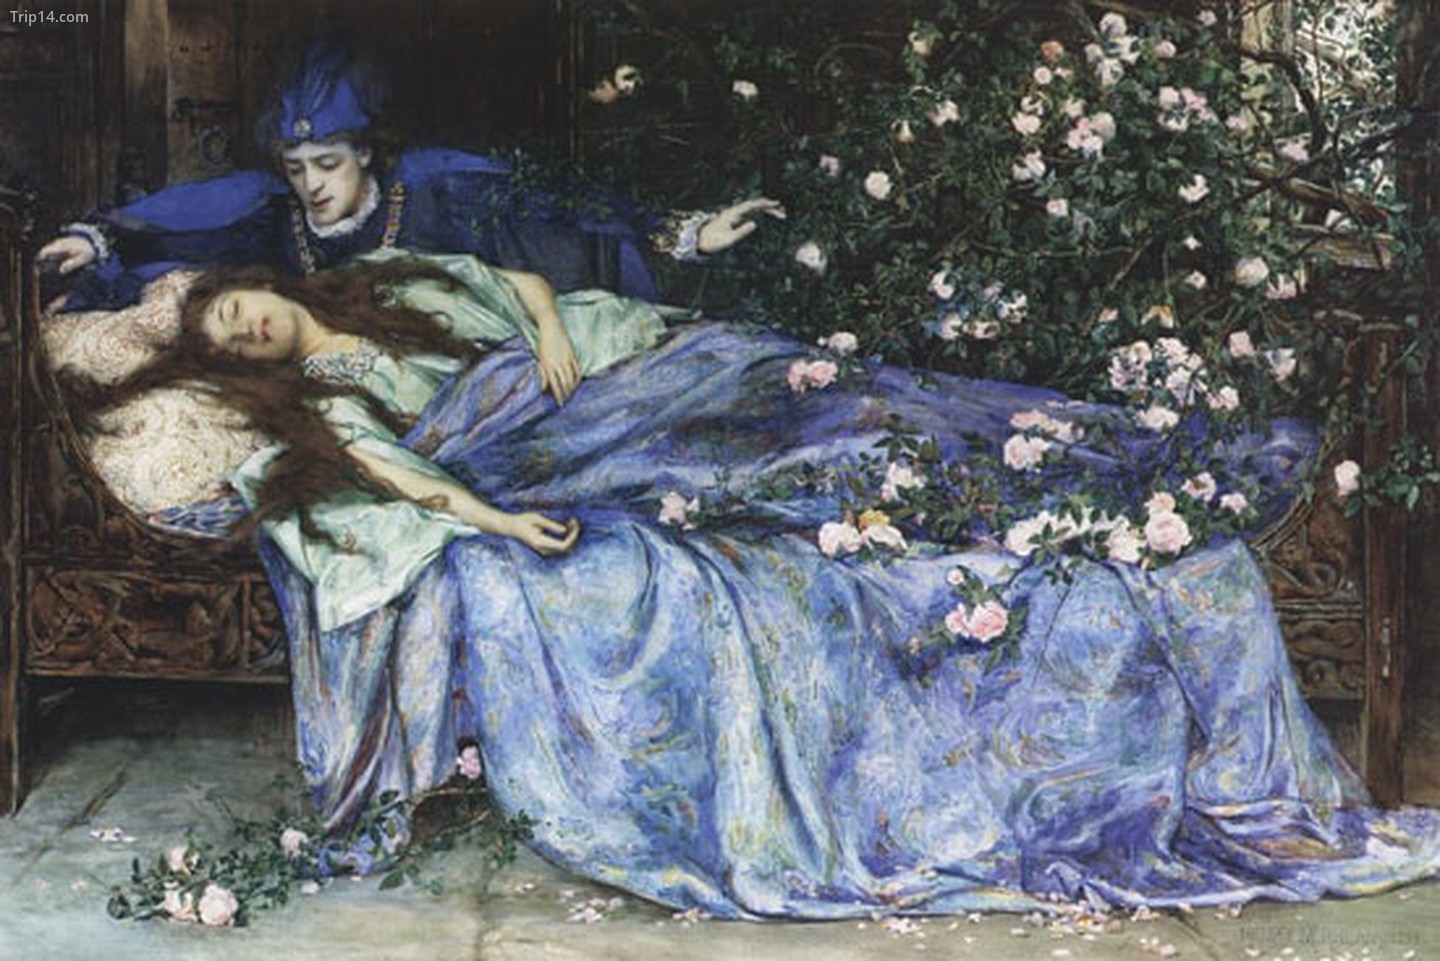  Henry Meynell Rheam - Người đẹp ngủ trong rừng 1899   |   